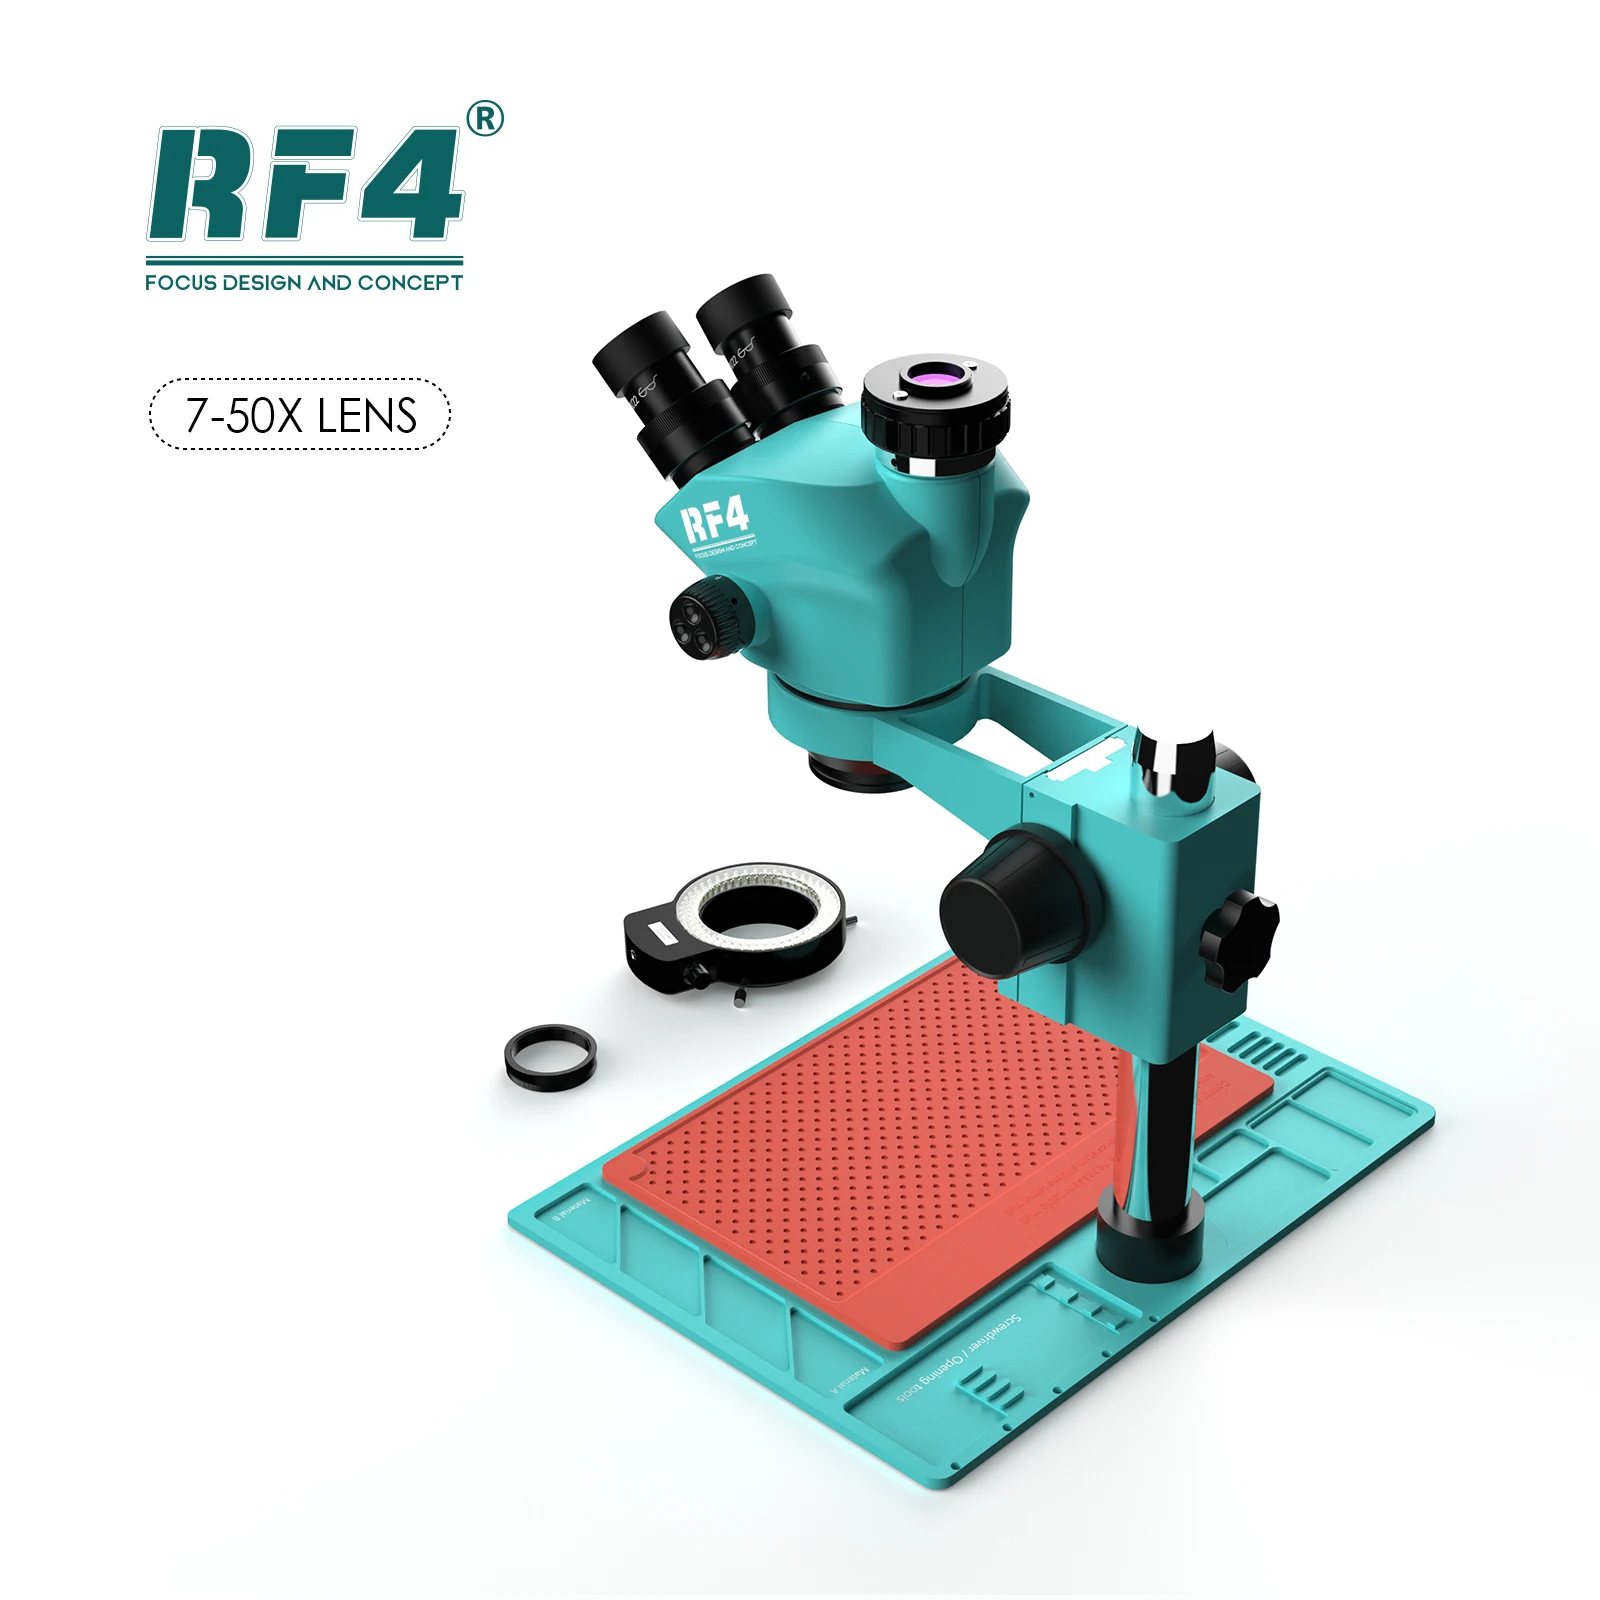 RF4 6,5 X-65X Sinchroninio Zoom Aukštai Temperatūrai Atsparus Važiuoklės 144LED Stereo Didinimo Triocular Mikroskopu RF6565-PO4